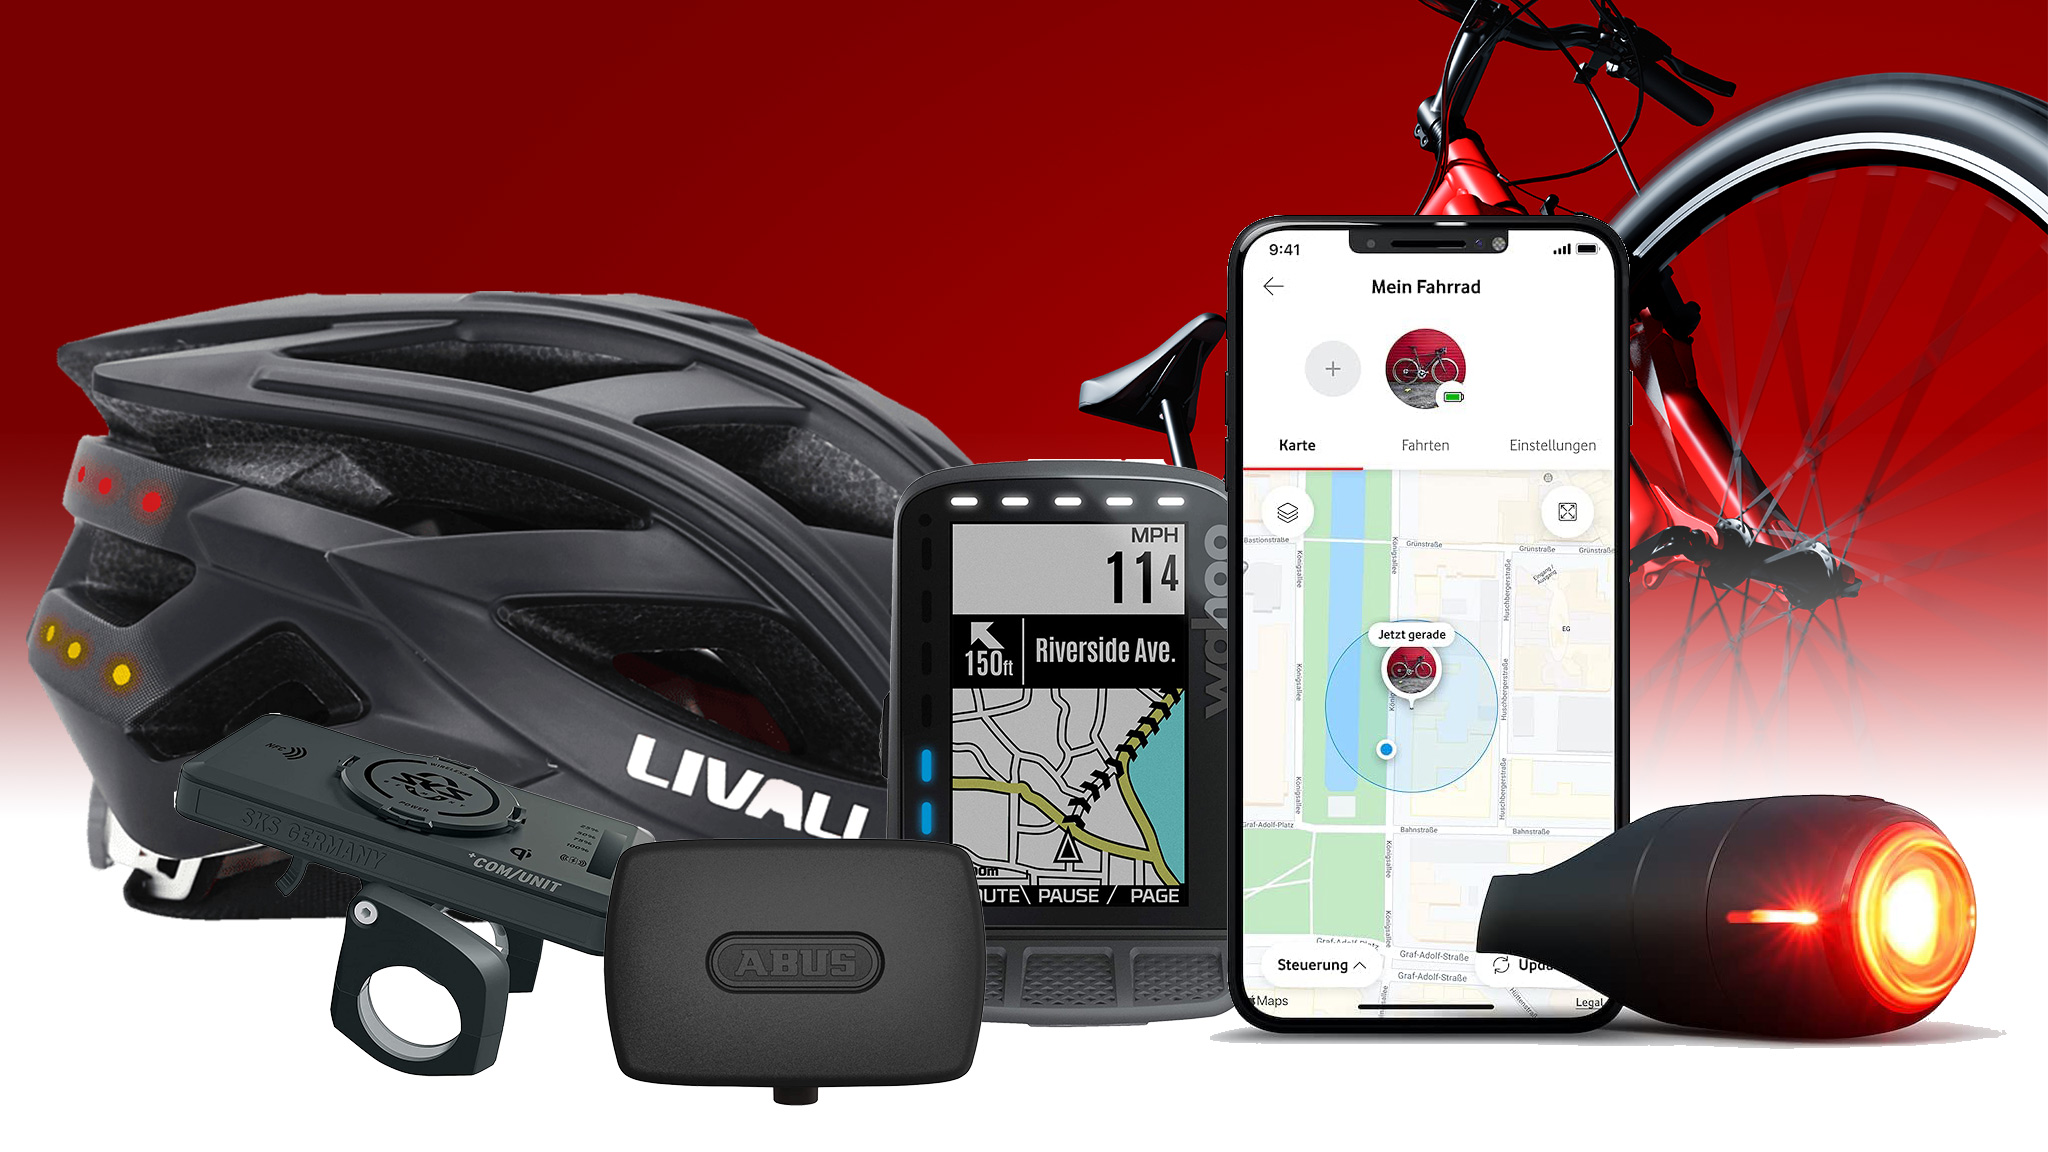 Sechs praktische Gadgets für deine Radreise oder Fahrradtour